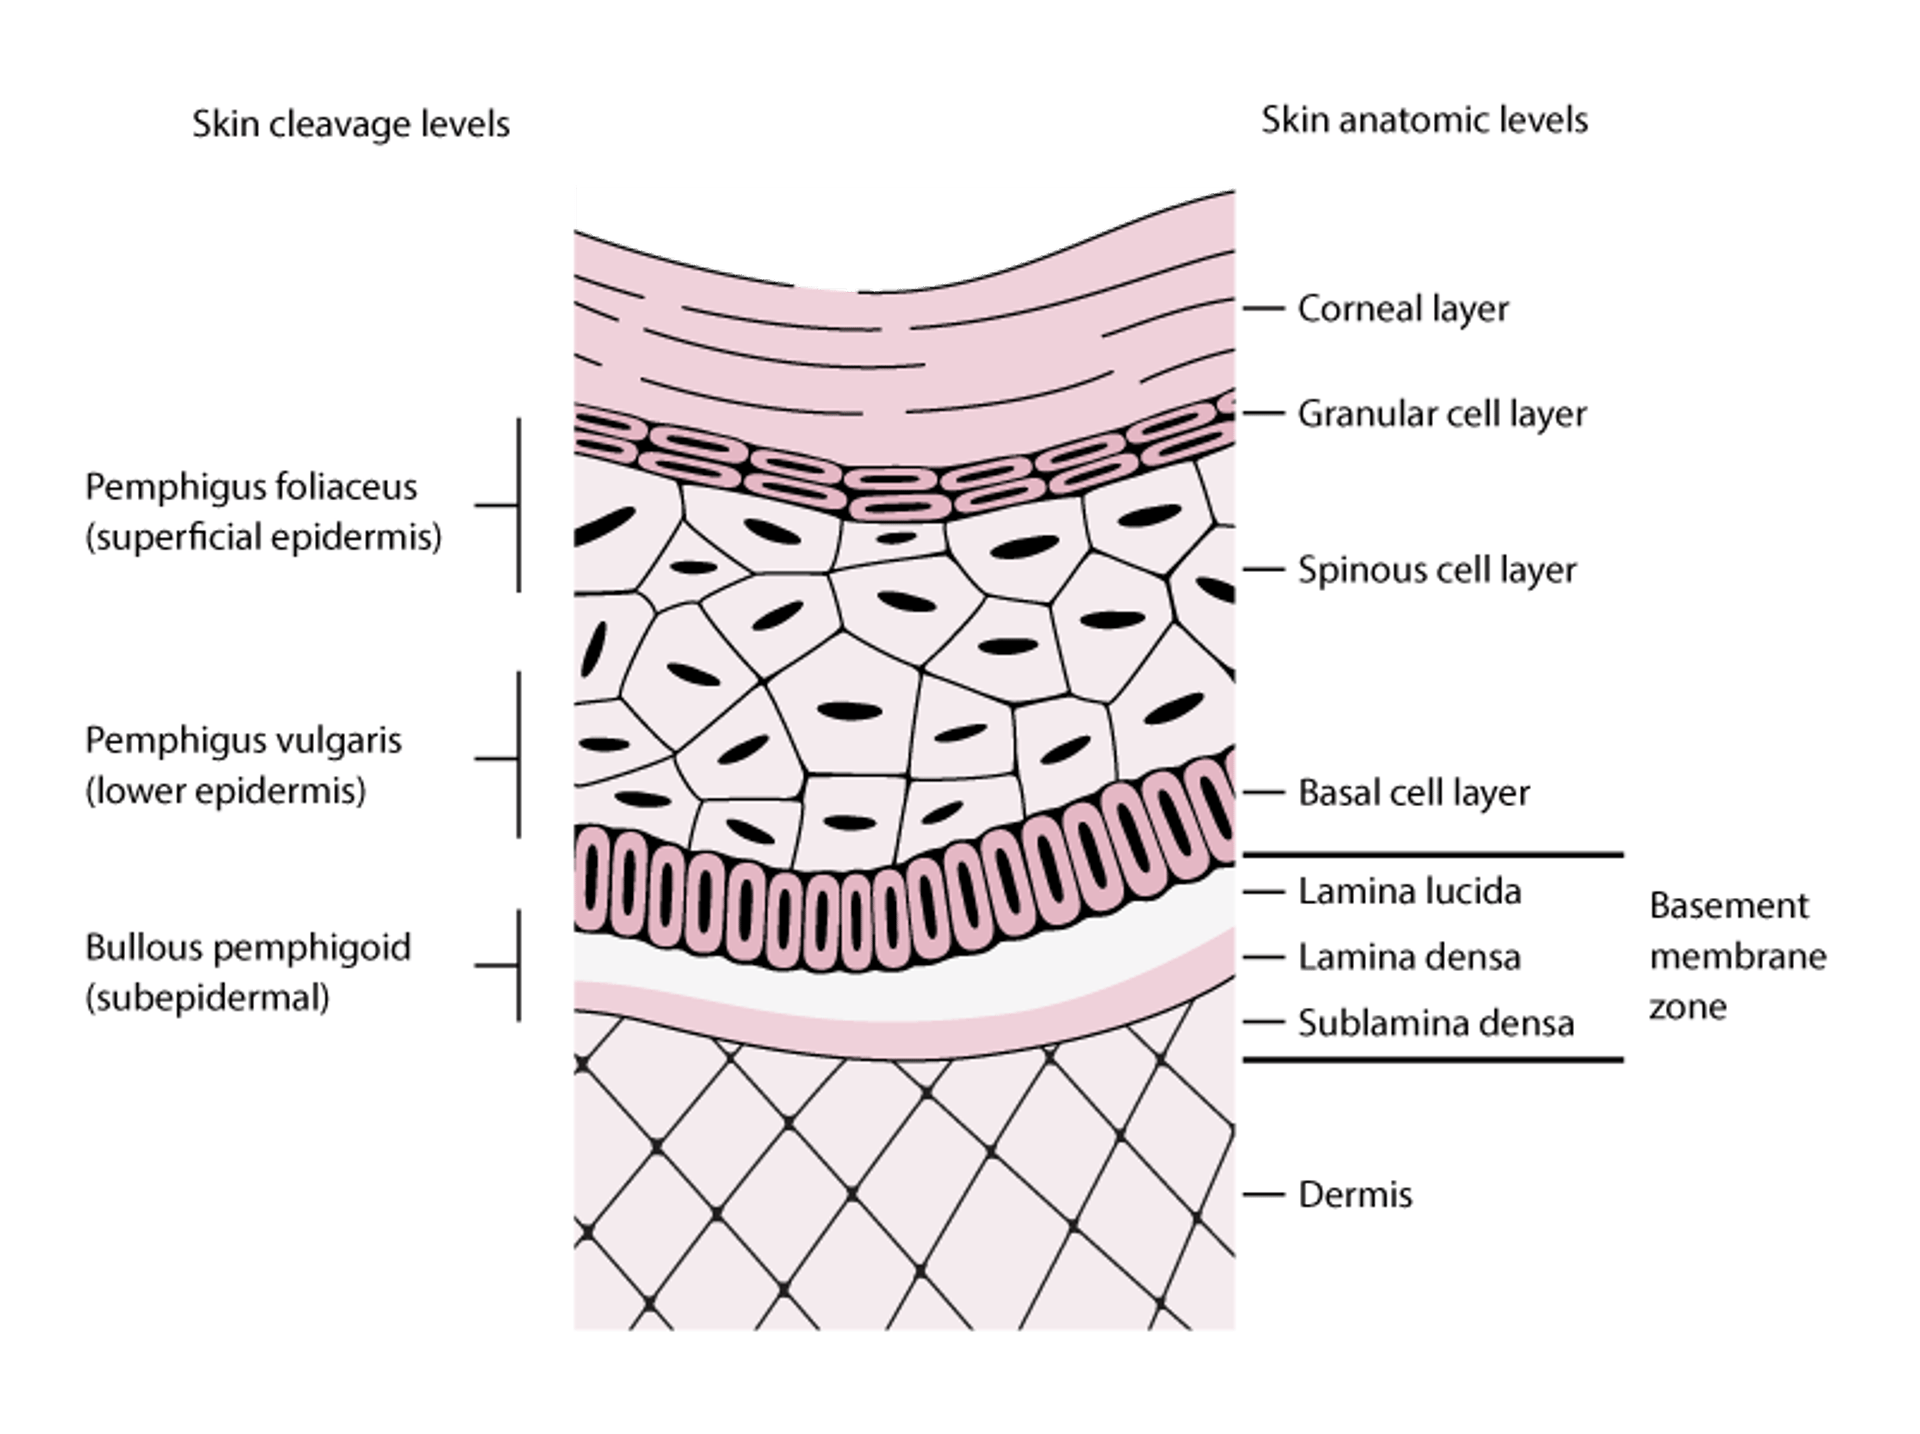 Niveaux de clivage cutané dans le pemphigus et dans la pemphigoïde bulleuse